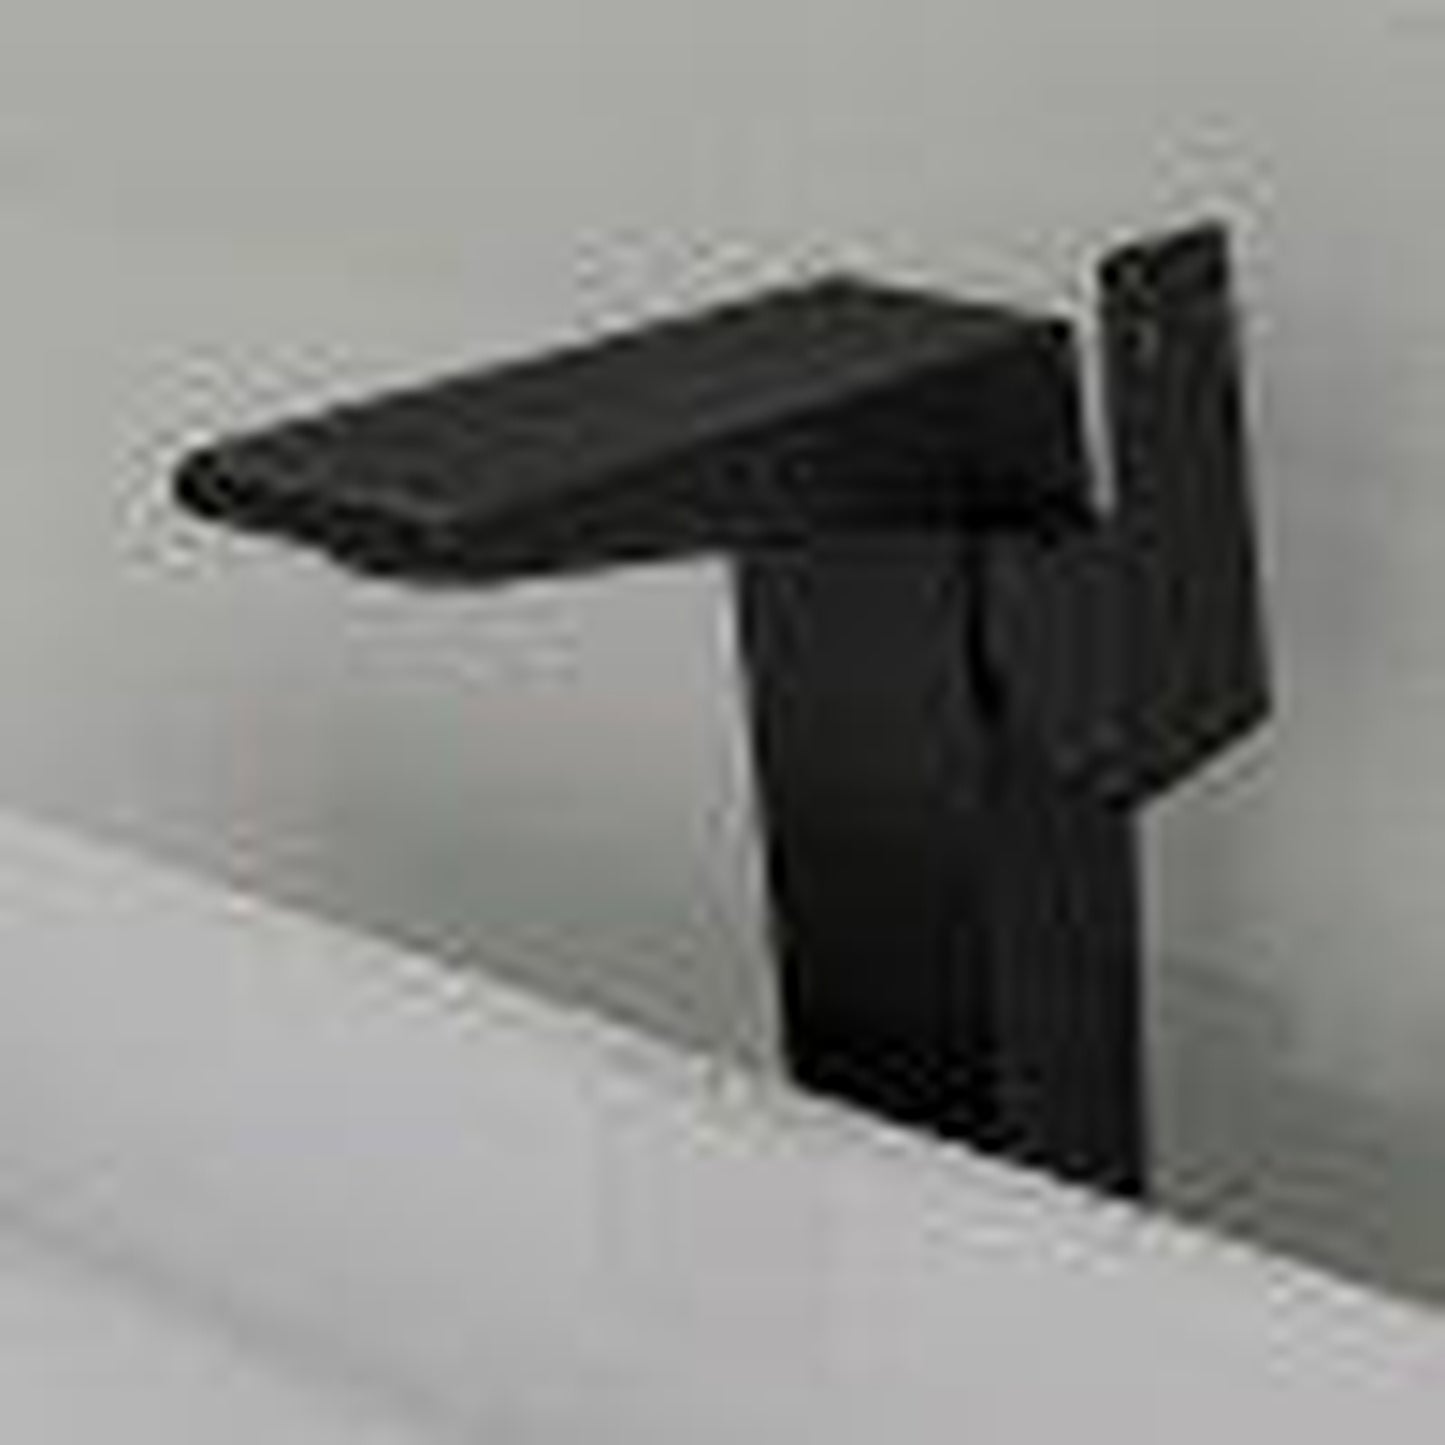 ALFI Brand AB1475-BM Black Matte Vessel Square Spout Brass Bathroom Sink Faucet With Single Lever